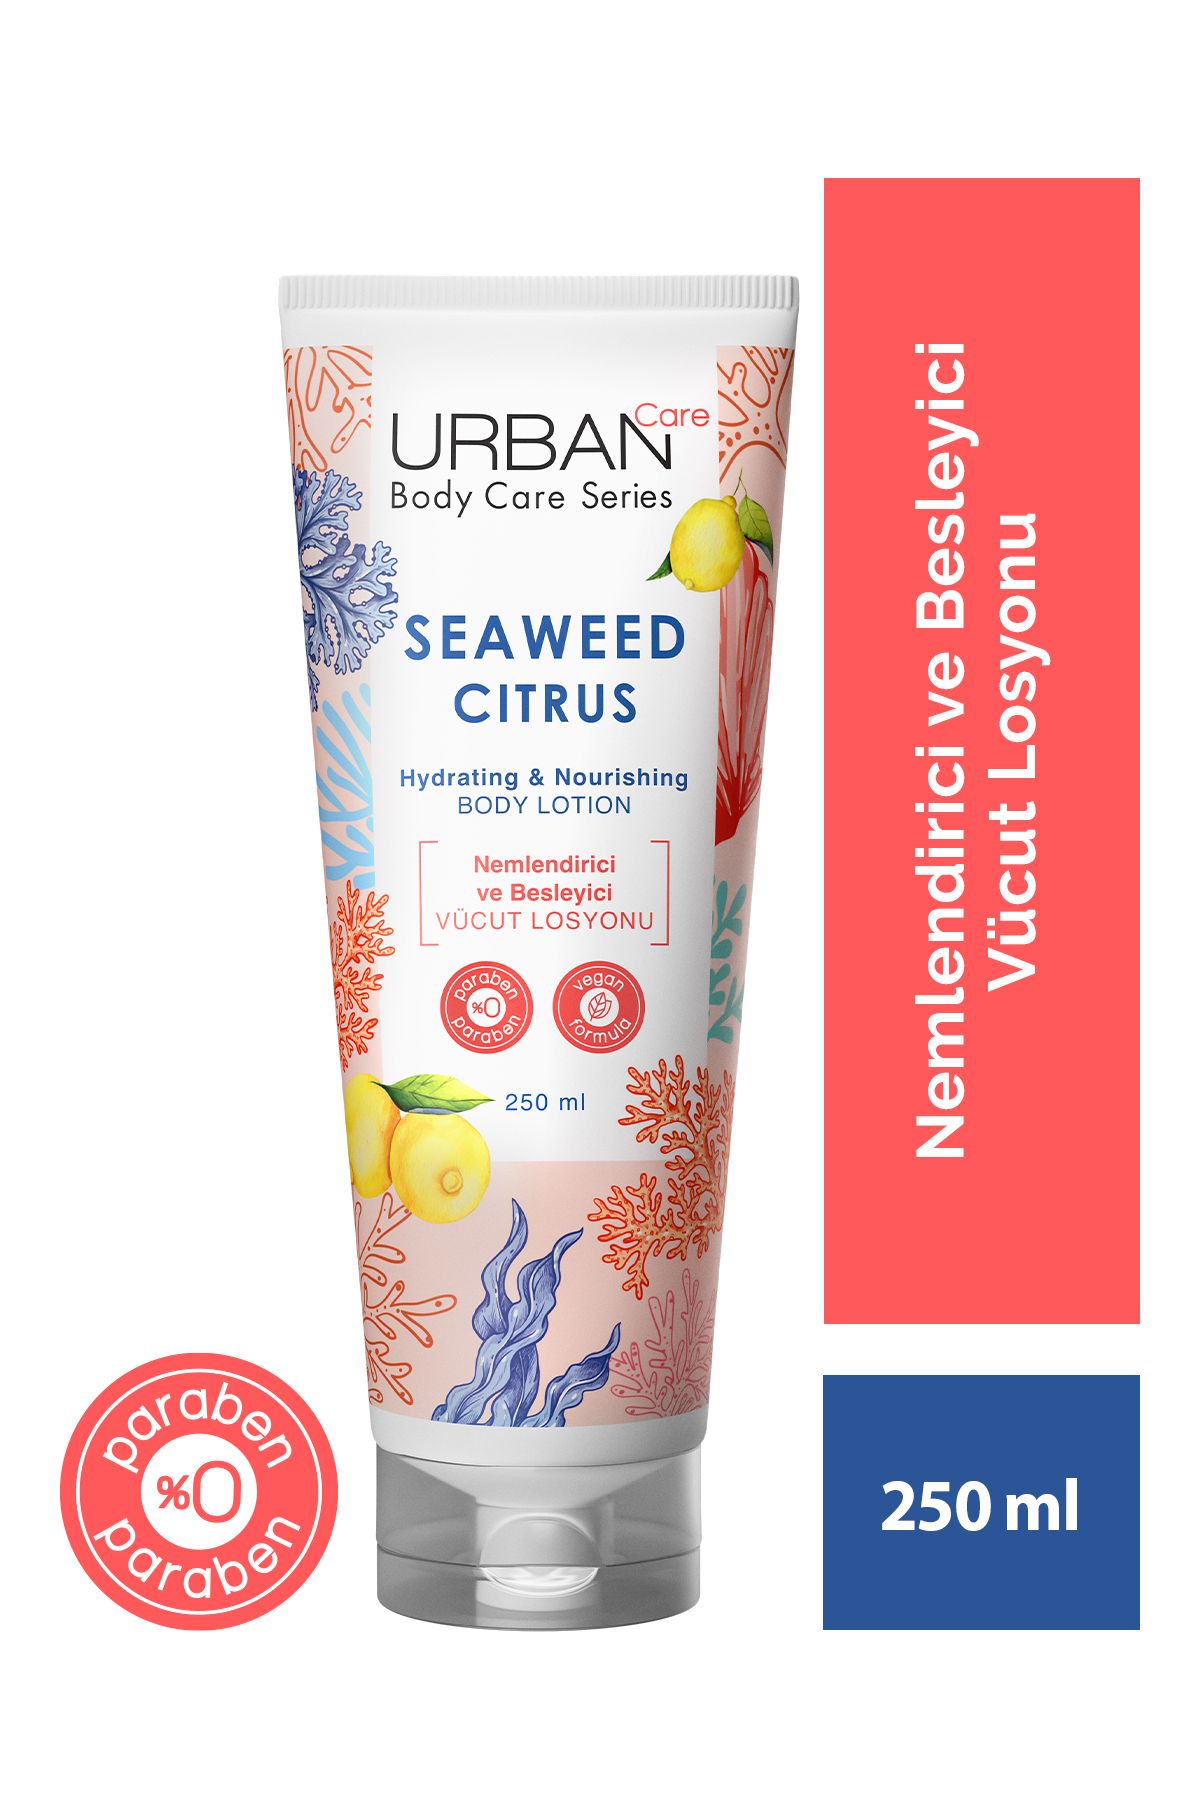 Urban Care Seaweed Citrus Nemlendirici Ve Besleyici Vücut Losyonu 250 ml - Vegan